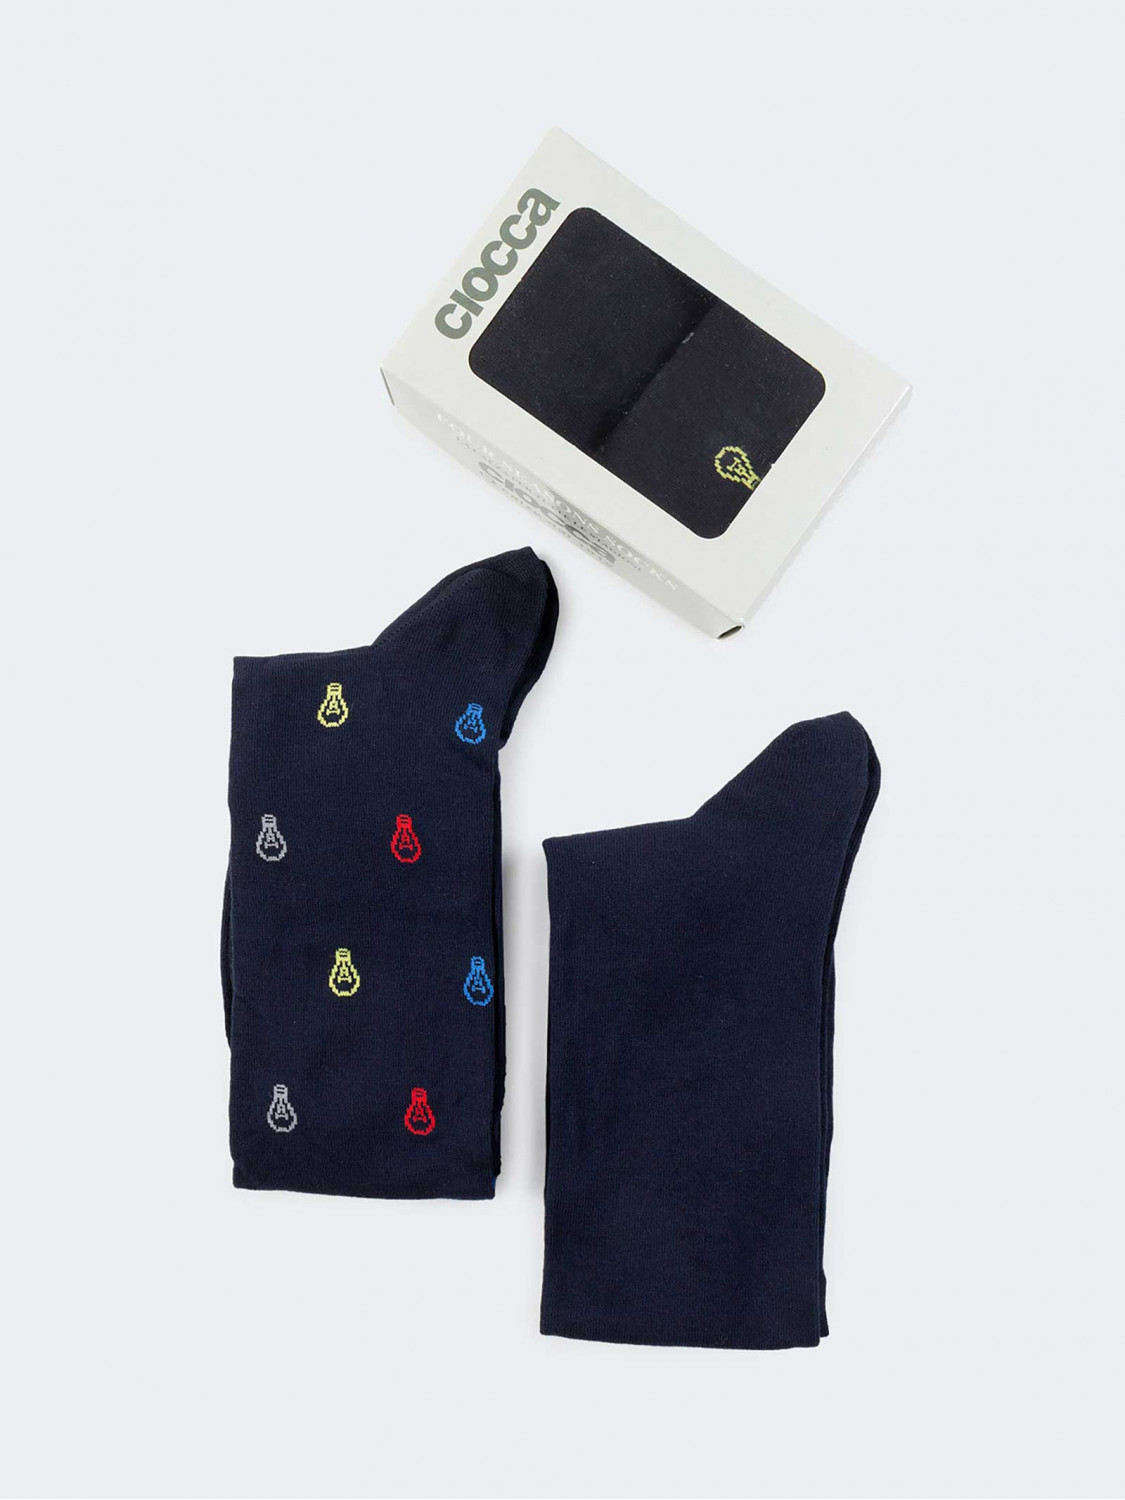 Geschenkpackung 2 Paar schicke Socken Glühbirne blau